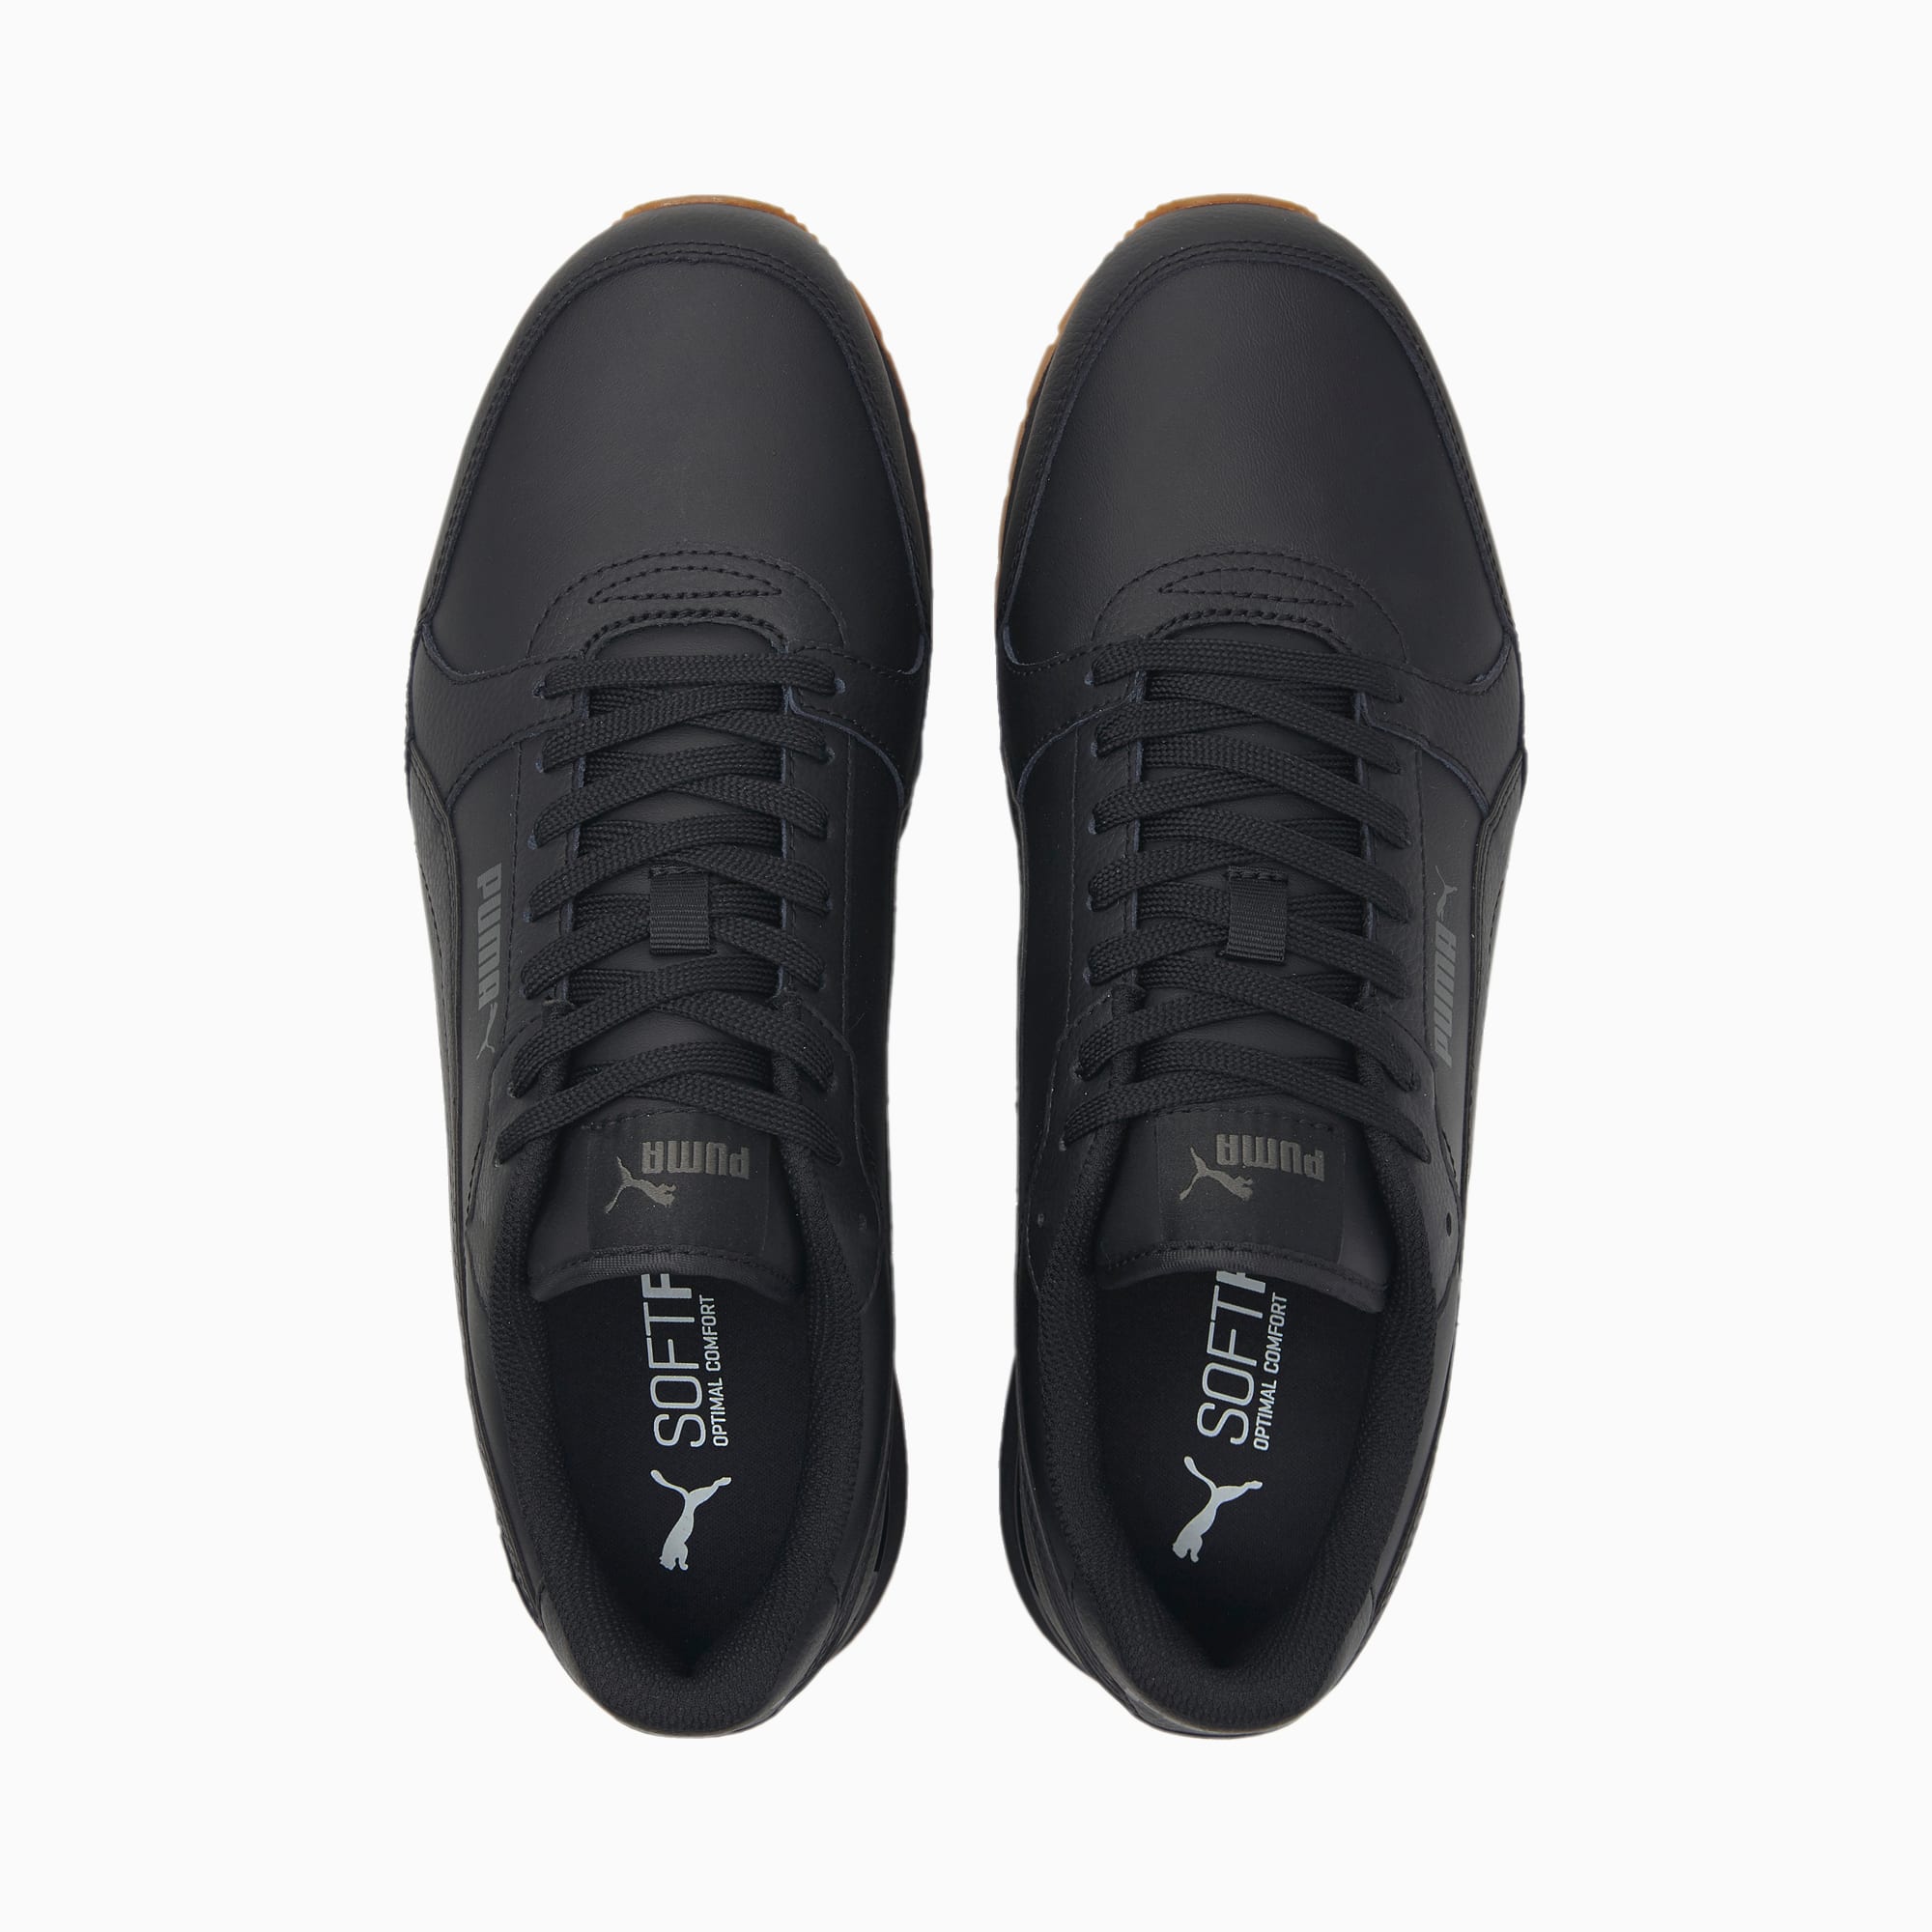 Puma St Runner V3 L Men's Sneakers, Black, 14